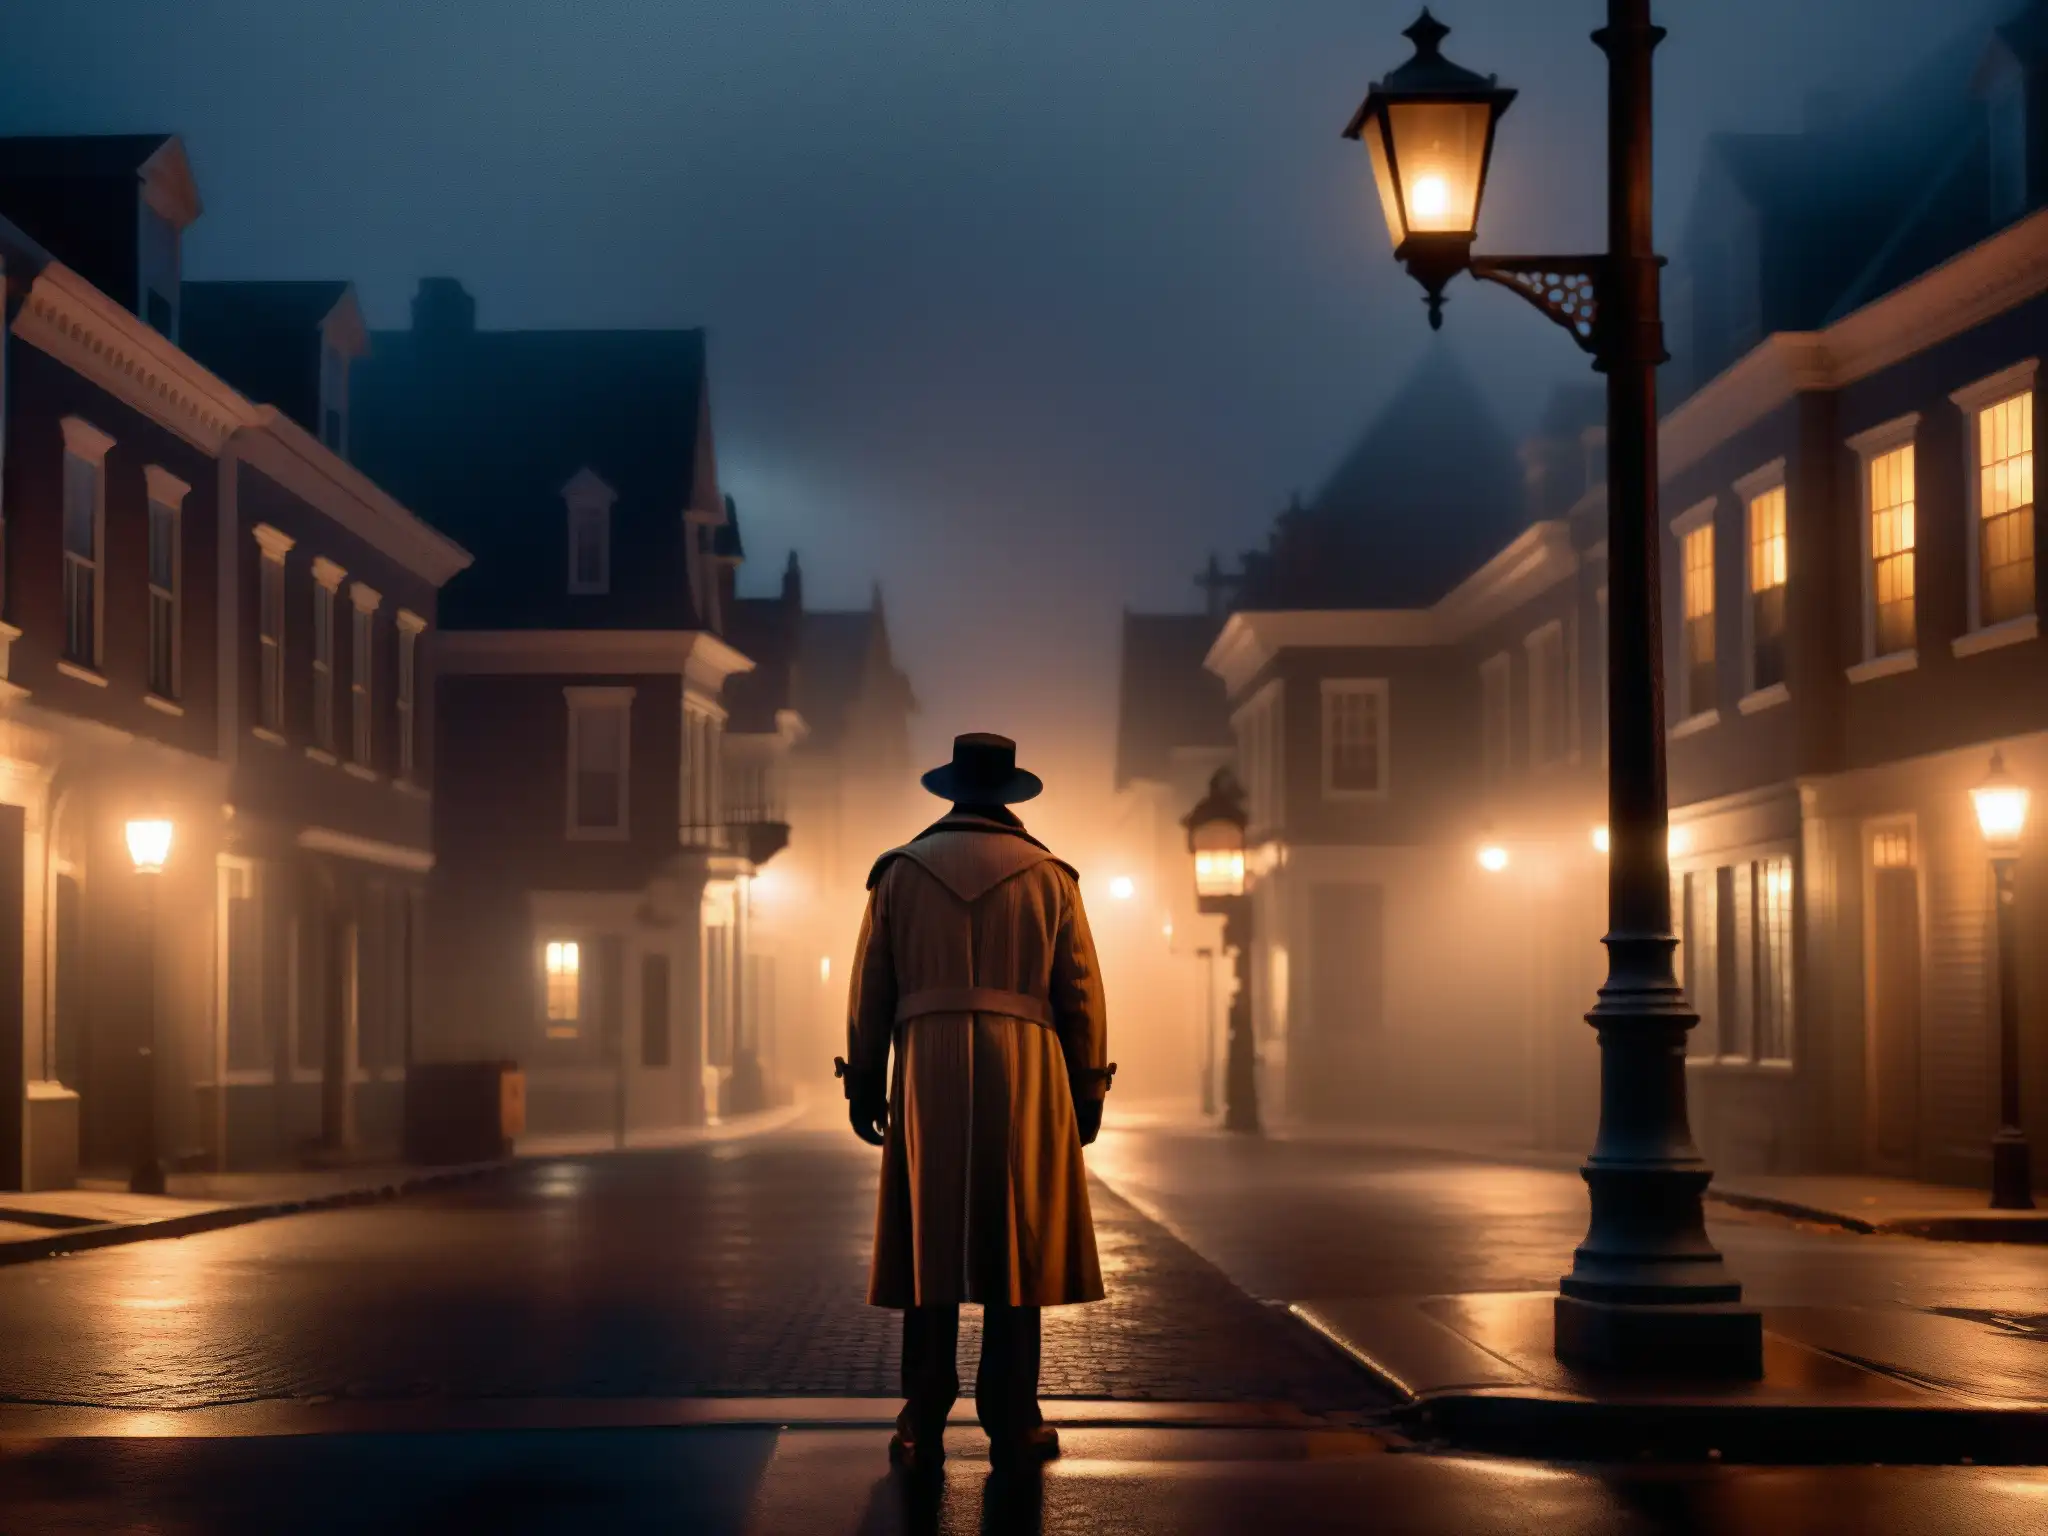 Un misterioso callejón nocturno en Halloween con una figura solitaria bajo una farola titilante